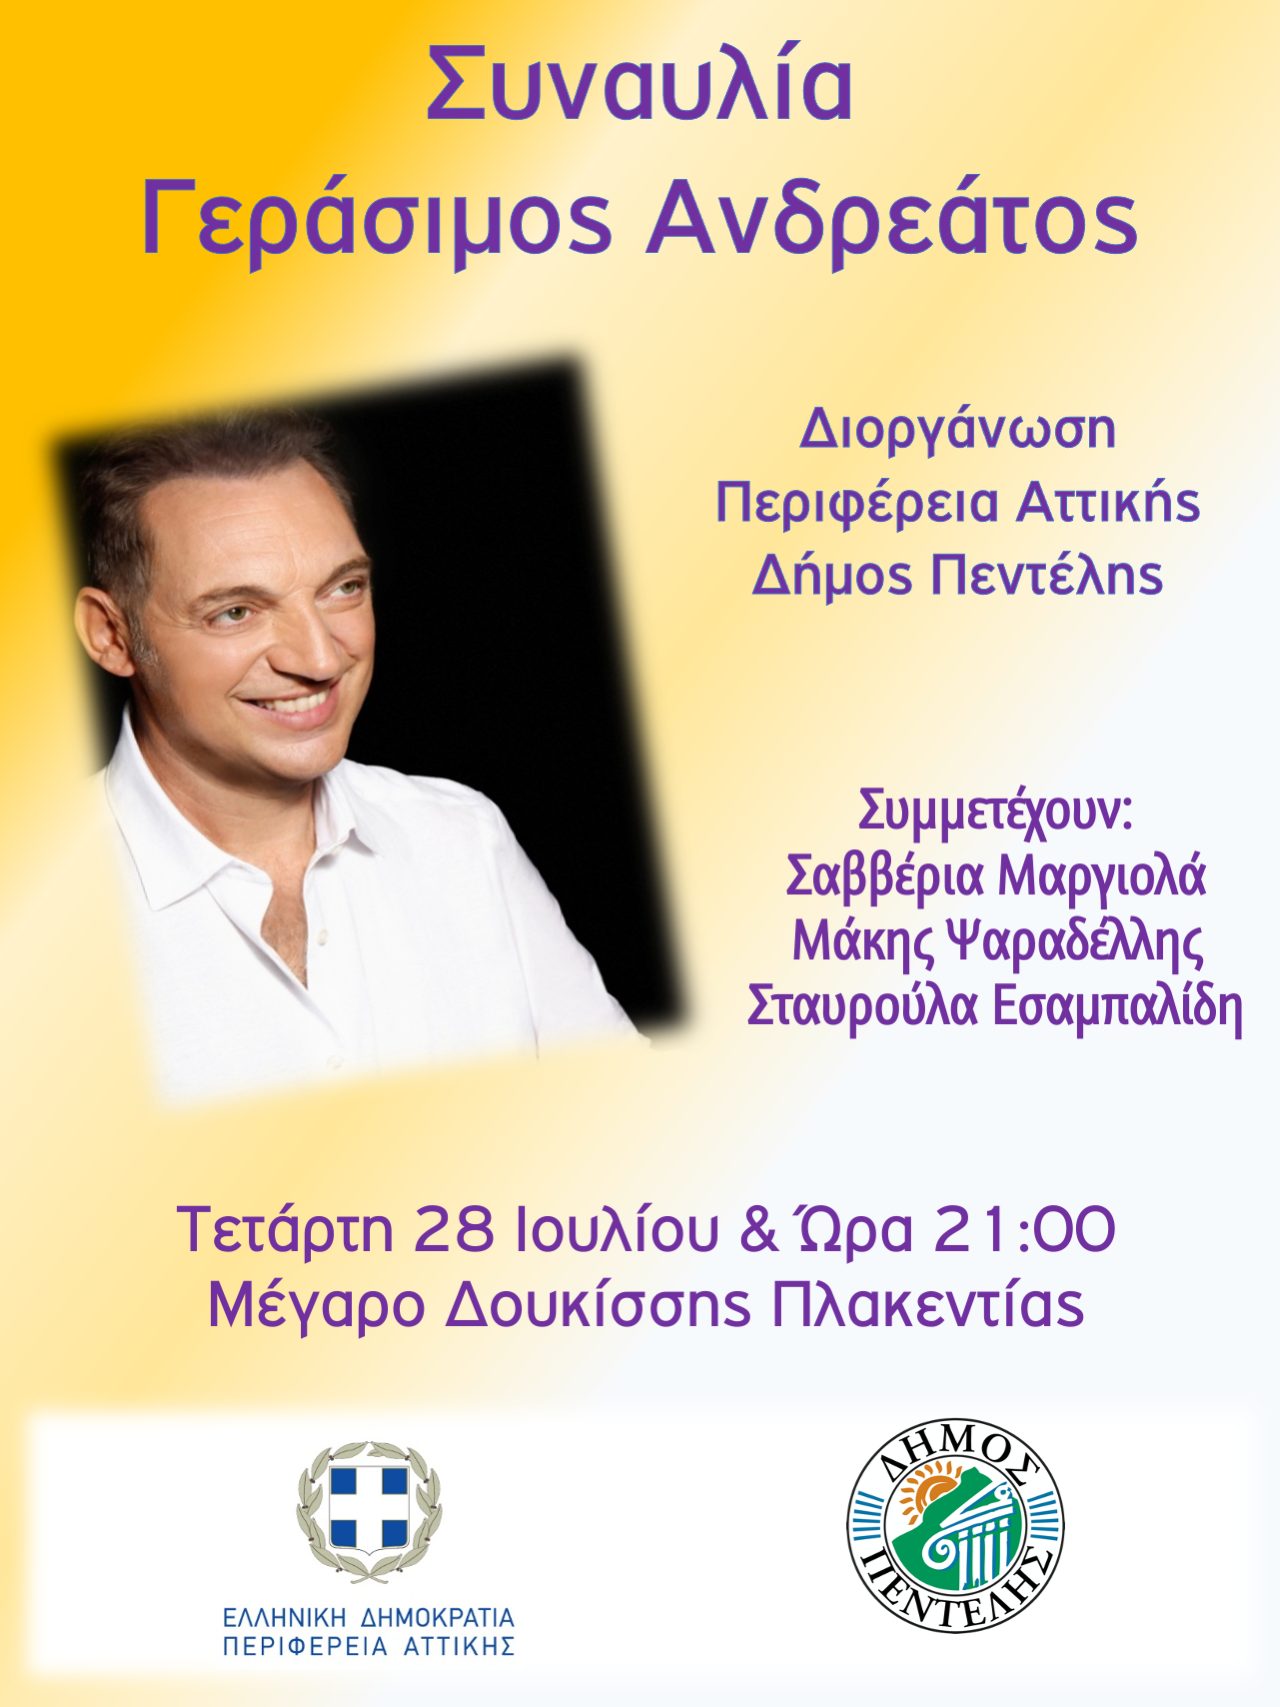 Μουσική Συναυλία με το Γεράσιμο Ανδρεάτο από την Περιφέρεια Αττικής και το Δήμο Πεντέλης – Μέγαρο Δουκίσσης Πλακεντίας, Τετάρτη 28/7 – 21:00